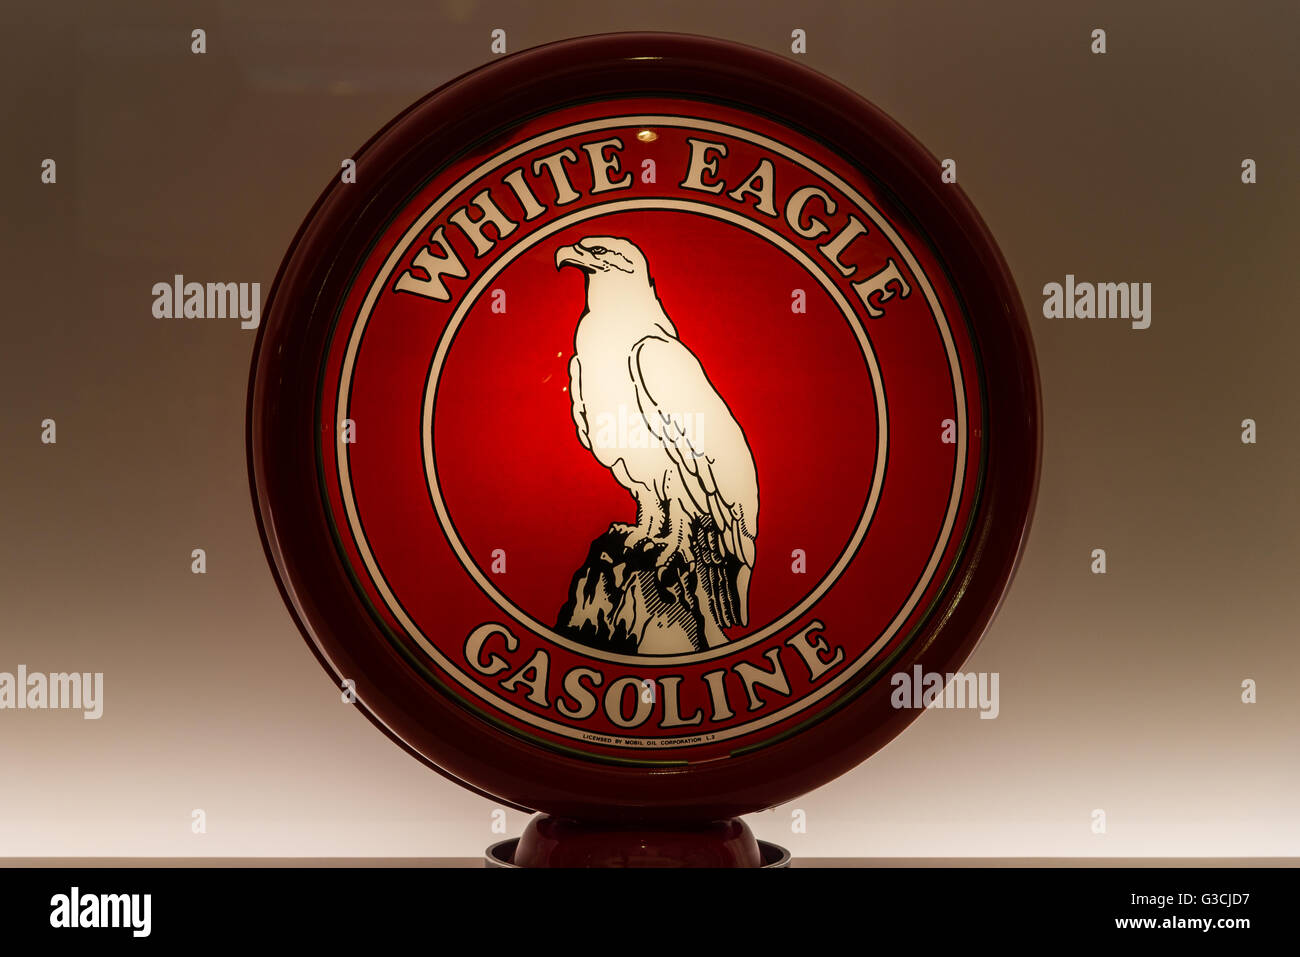 Globo de Cristal para vintage White Eagle bomba gasolina gas en pantalla. Foto de stock